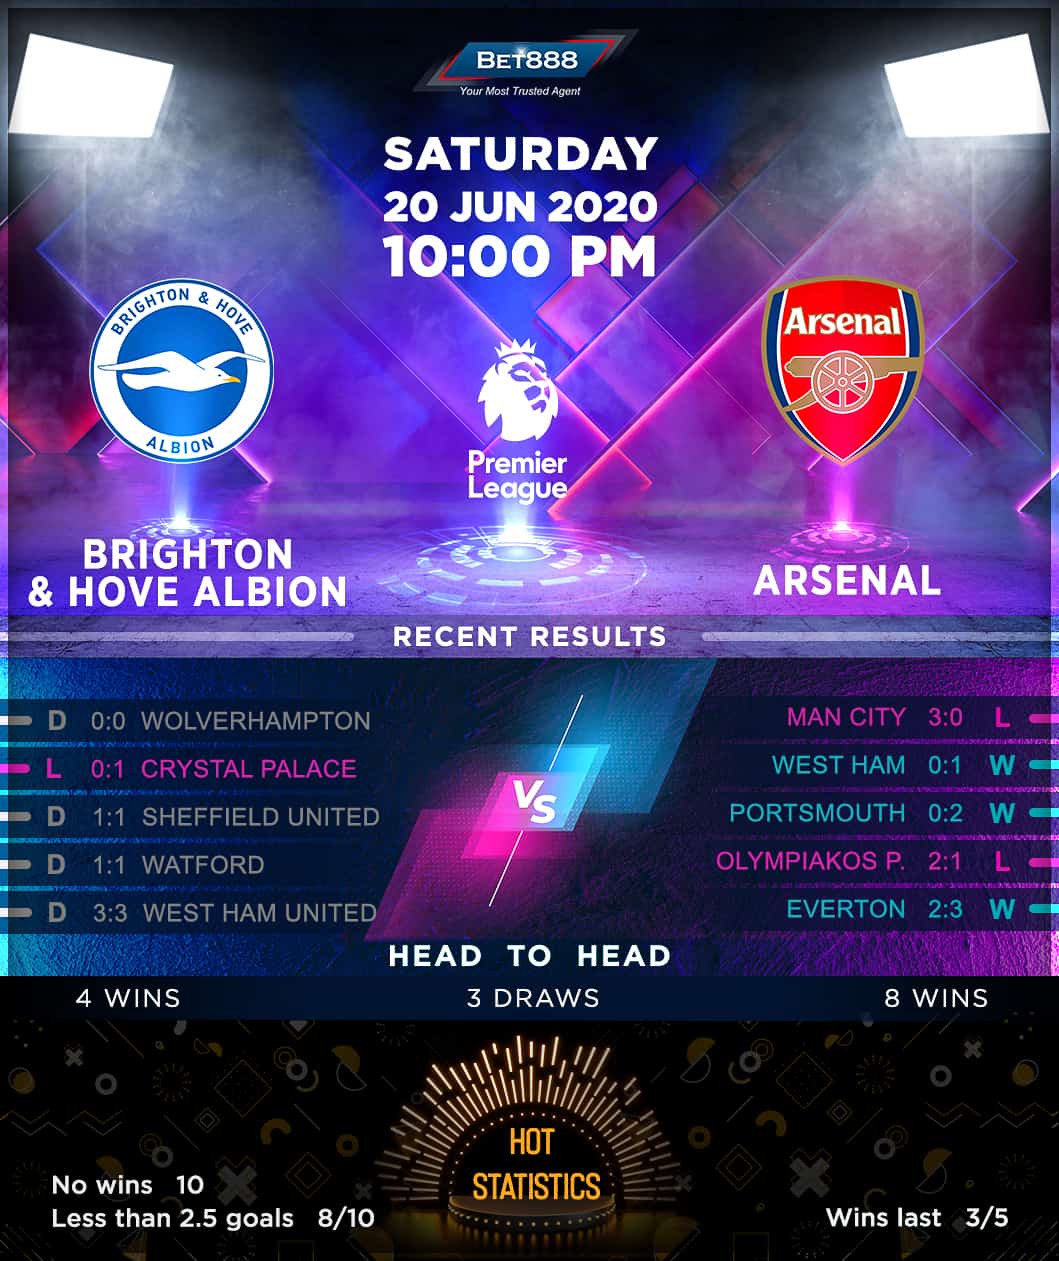 Brighton & Hove Albion vs Arsenal 20/06/20